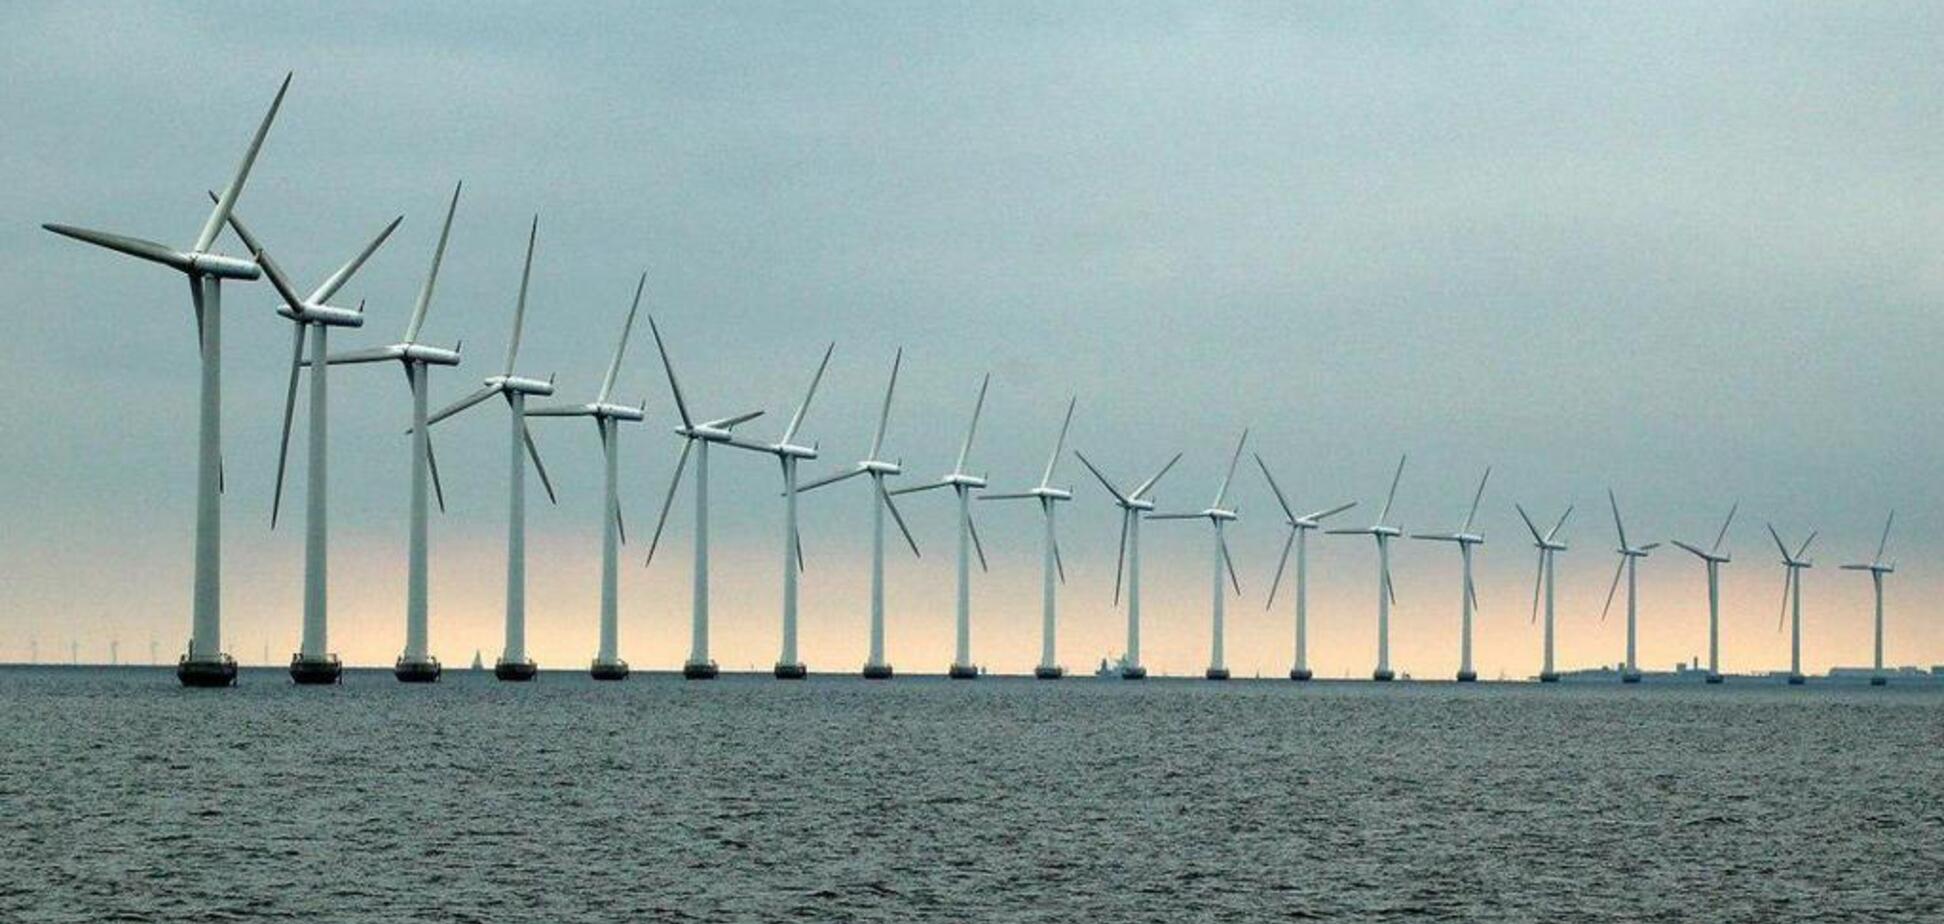 Перейшла на енергію вітру: країна ЄС встановила новий рекорд